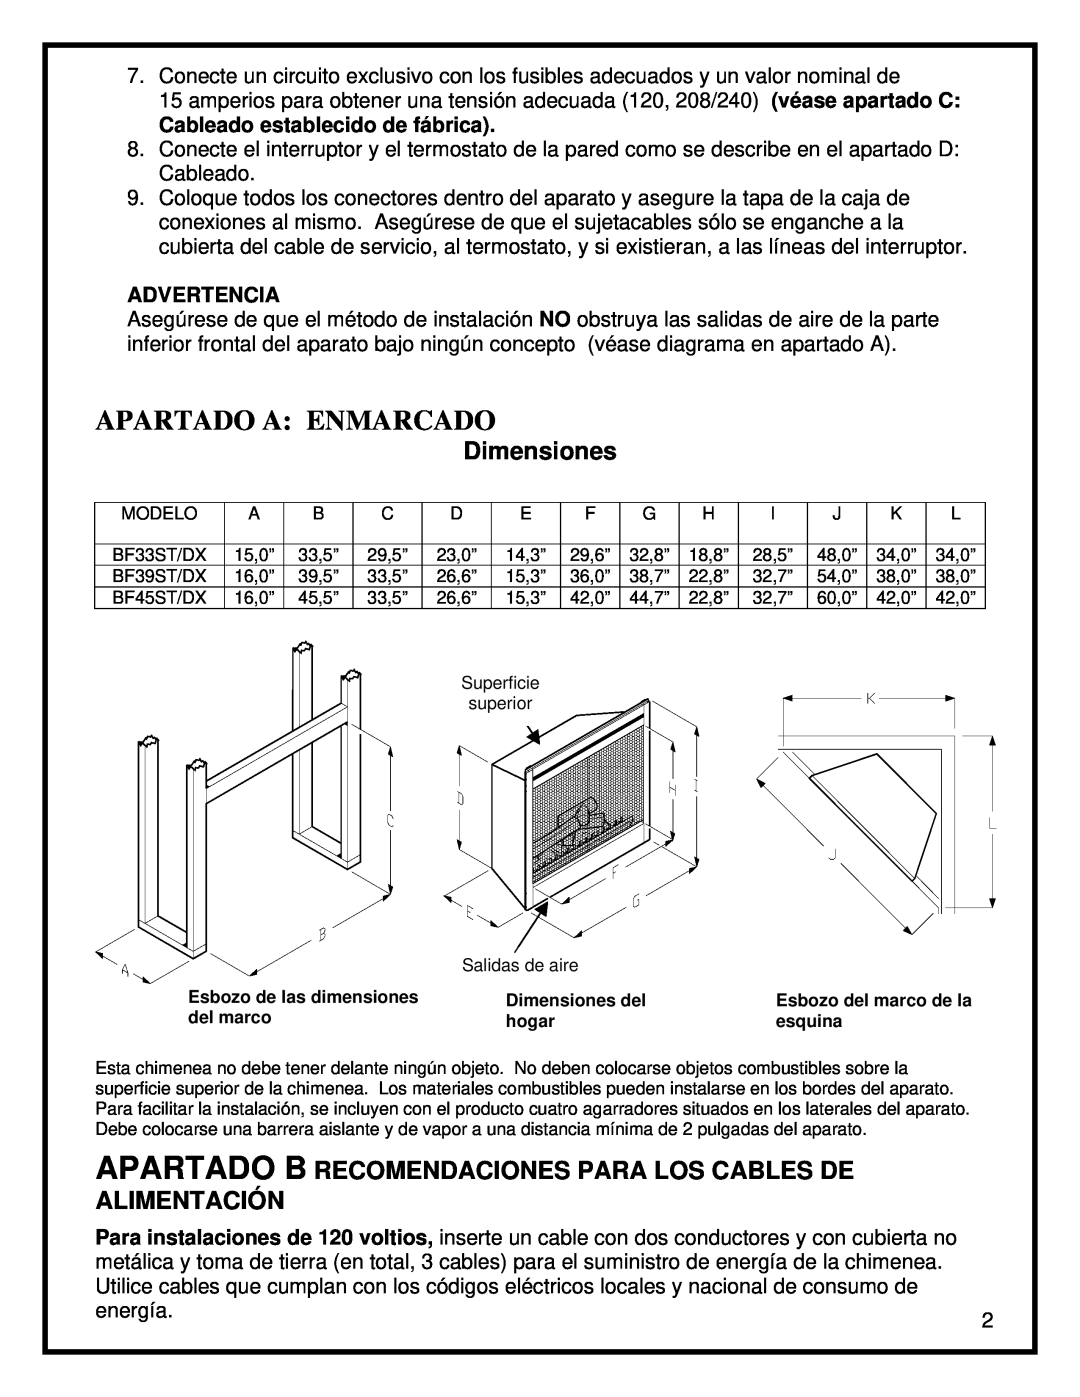 Dimplex BF45ST/DX manual Dimensiones, Apartado A Enmarcado 